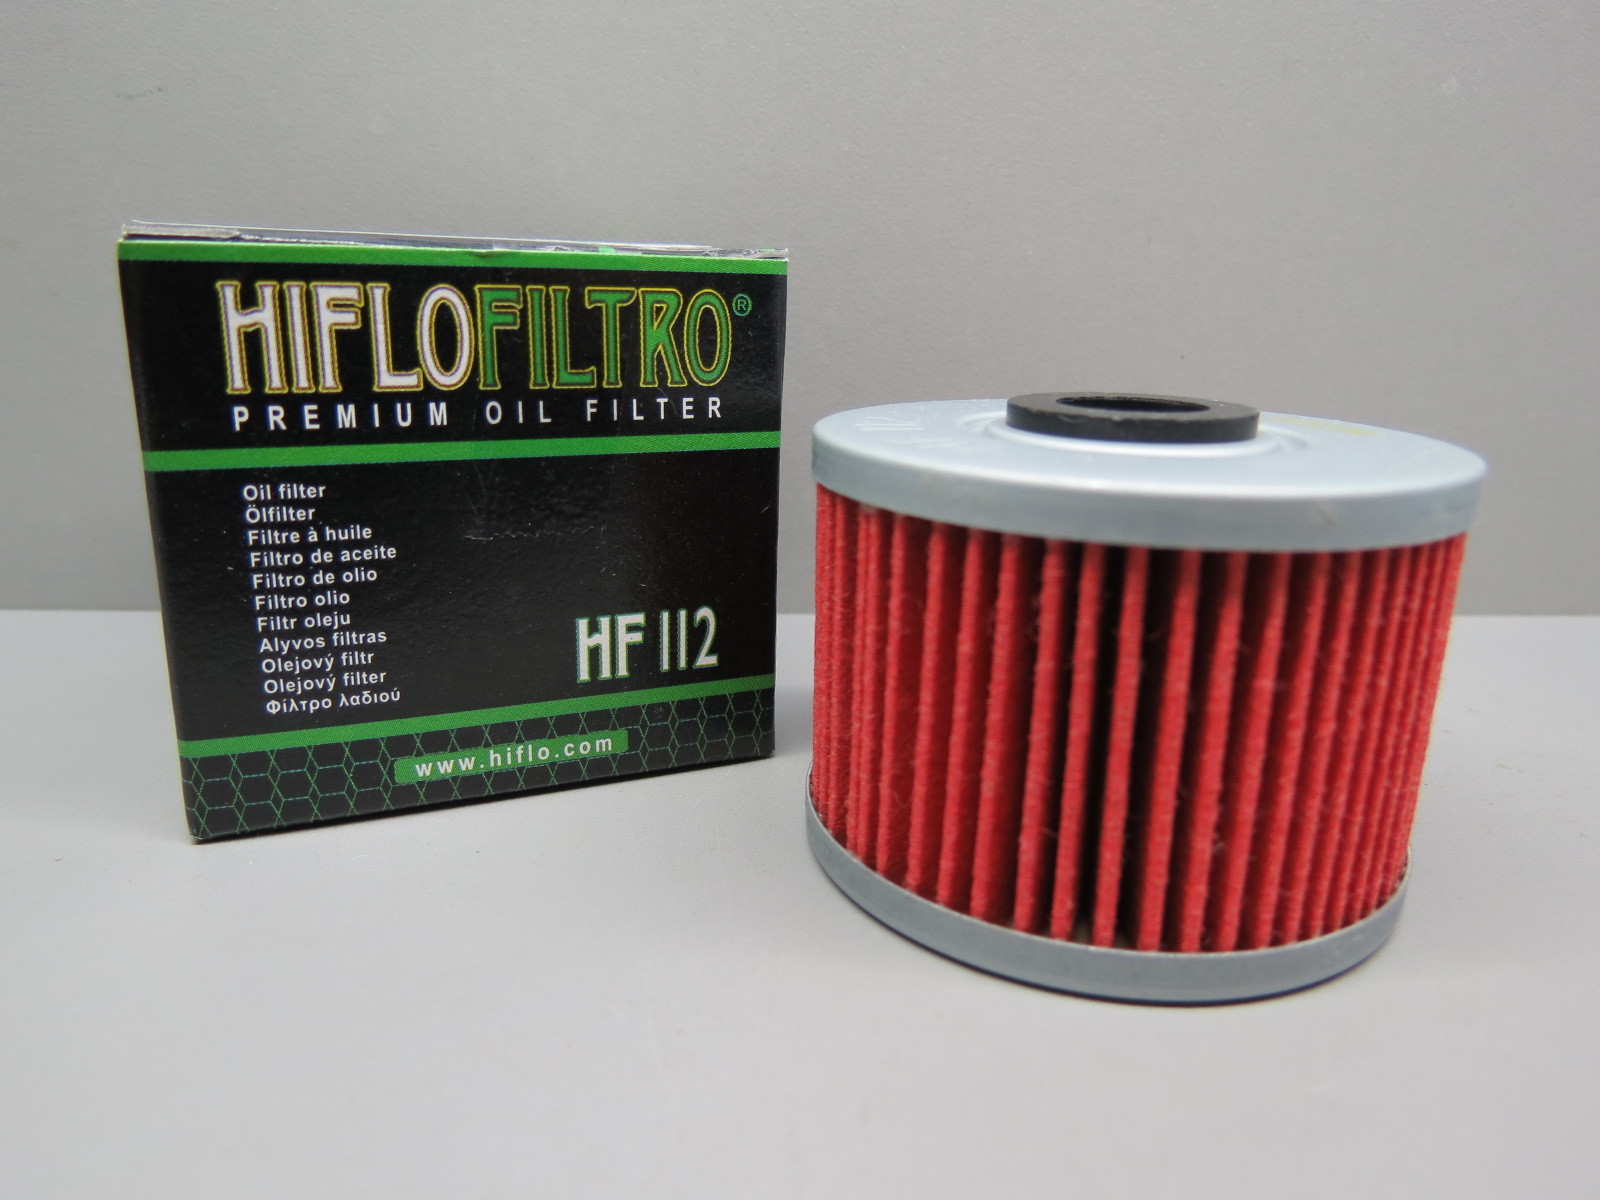 Фильтр 112. Масляный фильтр HIFLO hf112. Hf112 фильтр масляный HIFLOFILTRO. HIFLO 112 масляный фильтр. Фильтр масляный hf112 Honda.